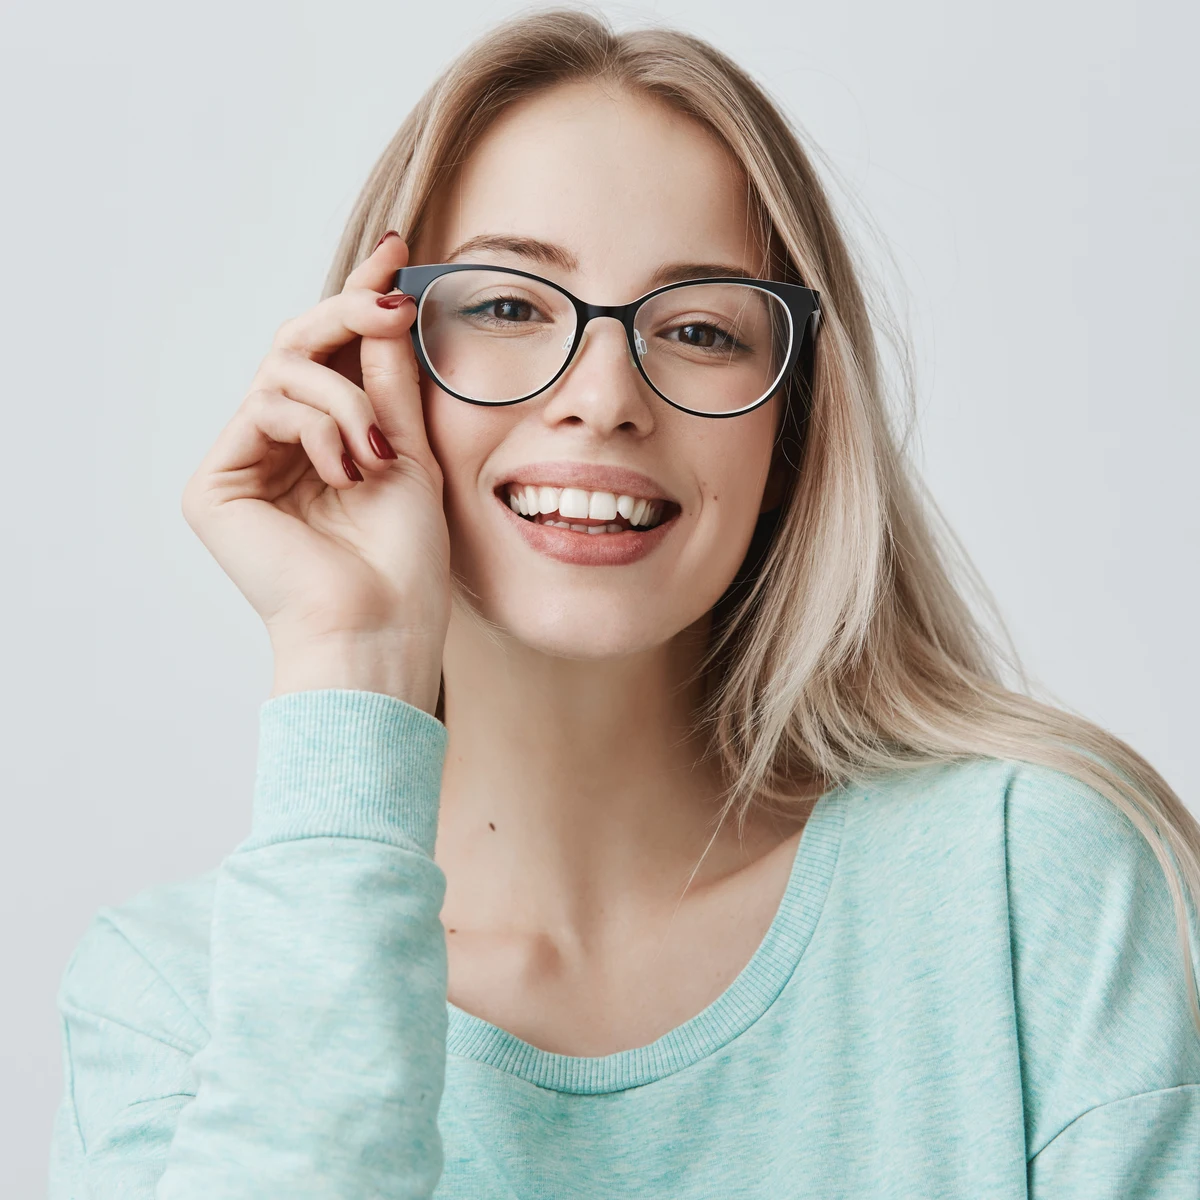 Las mujeres cada vez vemos peor y usamos más gafas, pero con estilo